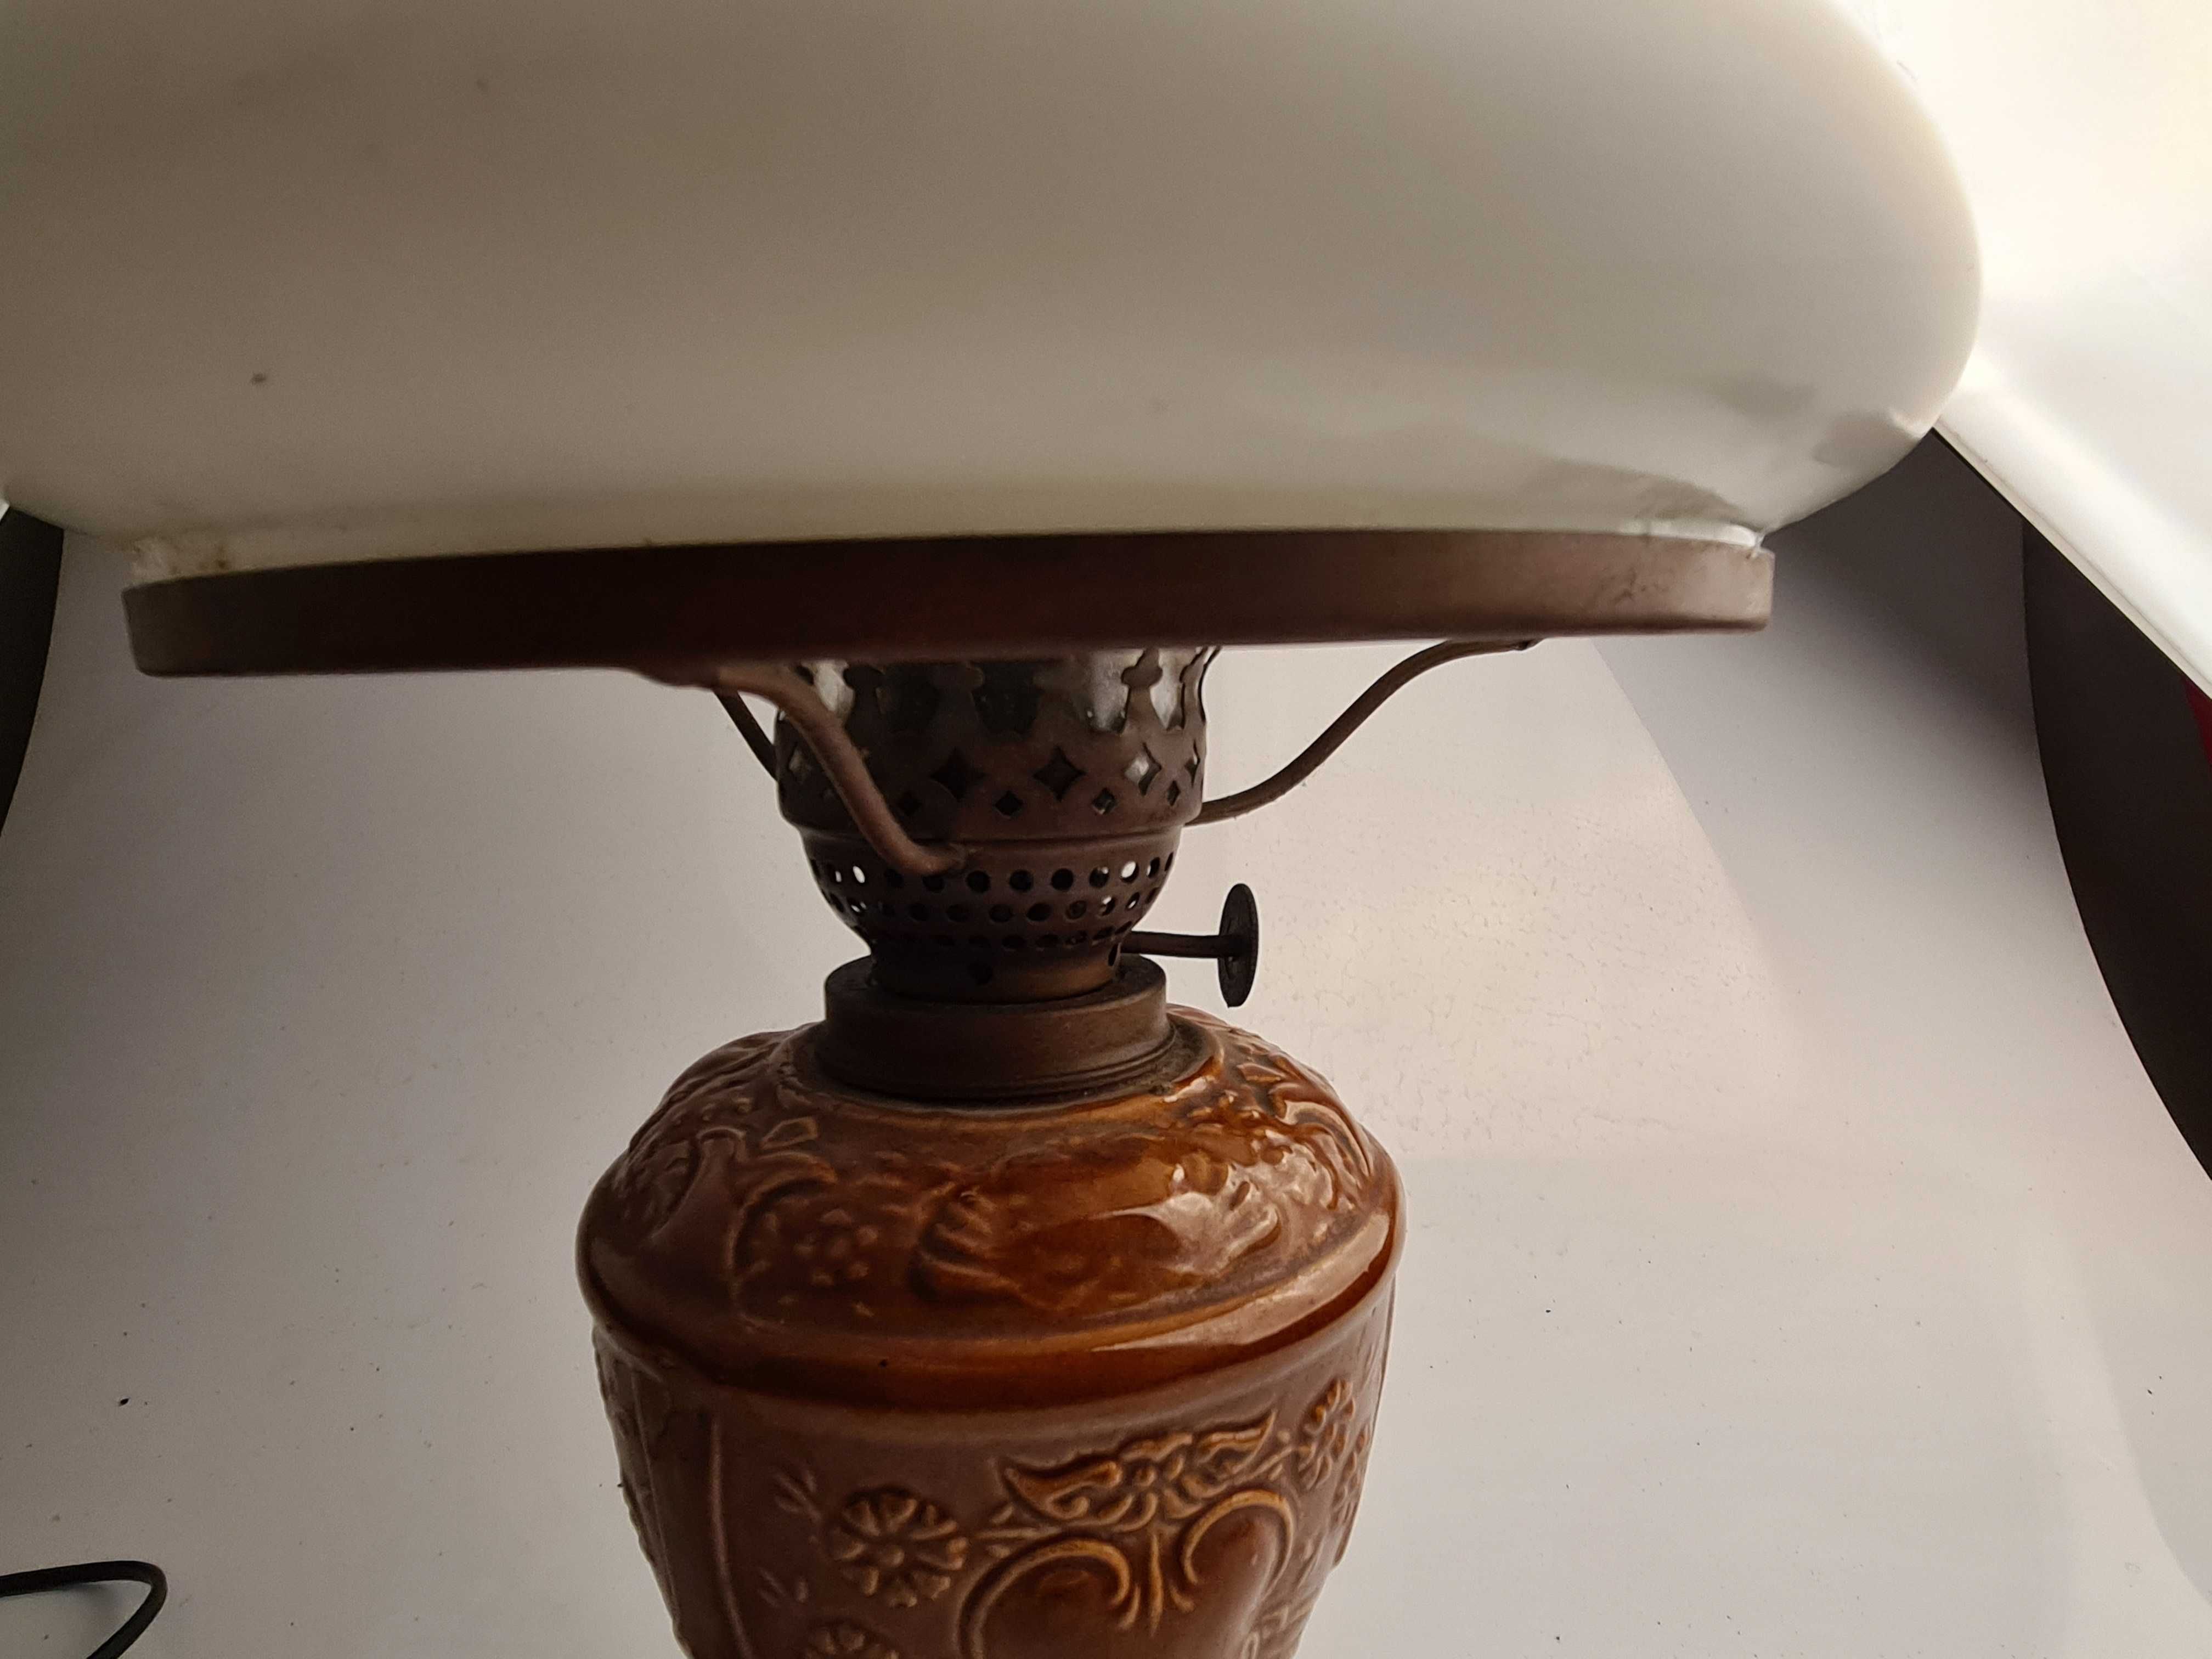 Lampa stojąca stylizowana  na lampę naftową  /PRL/